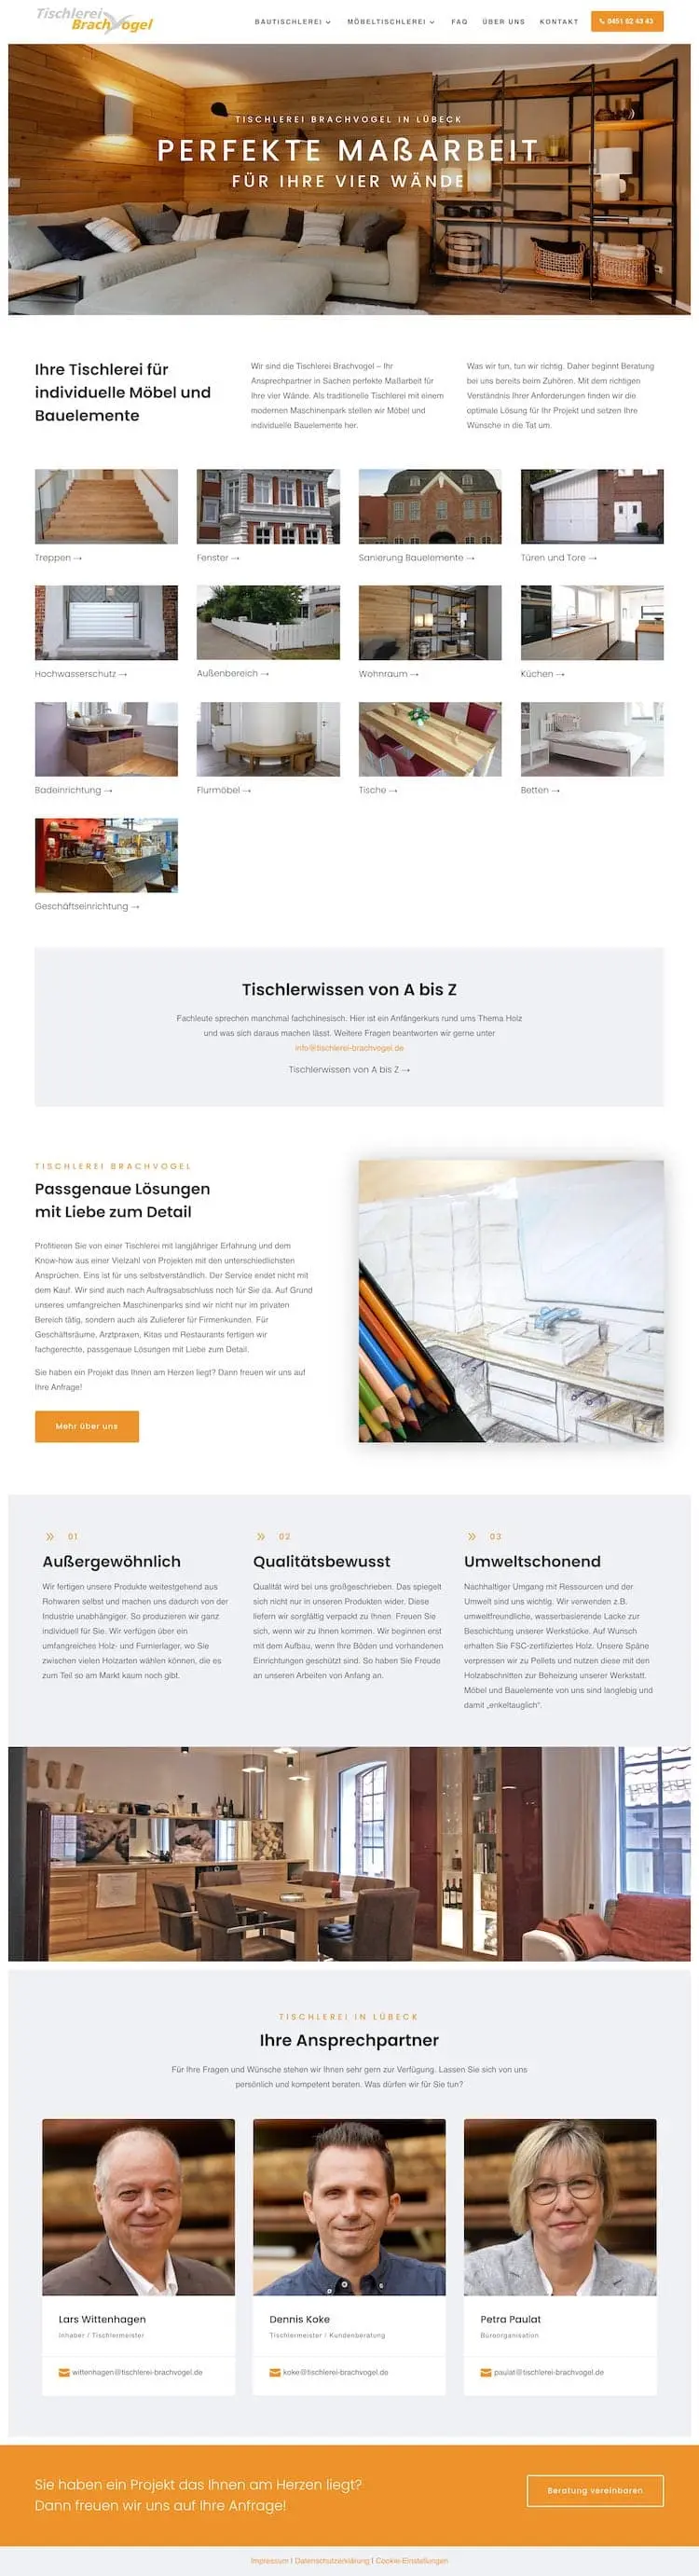 Webdesign für Handwerker - Tischlerei Brachvogel